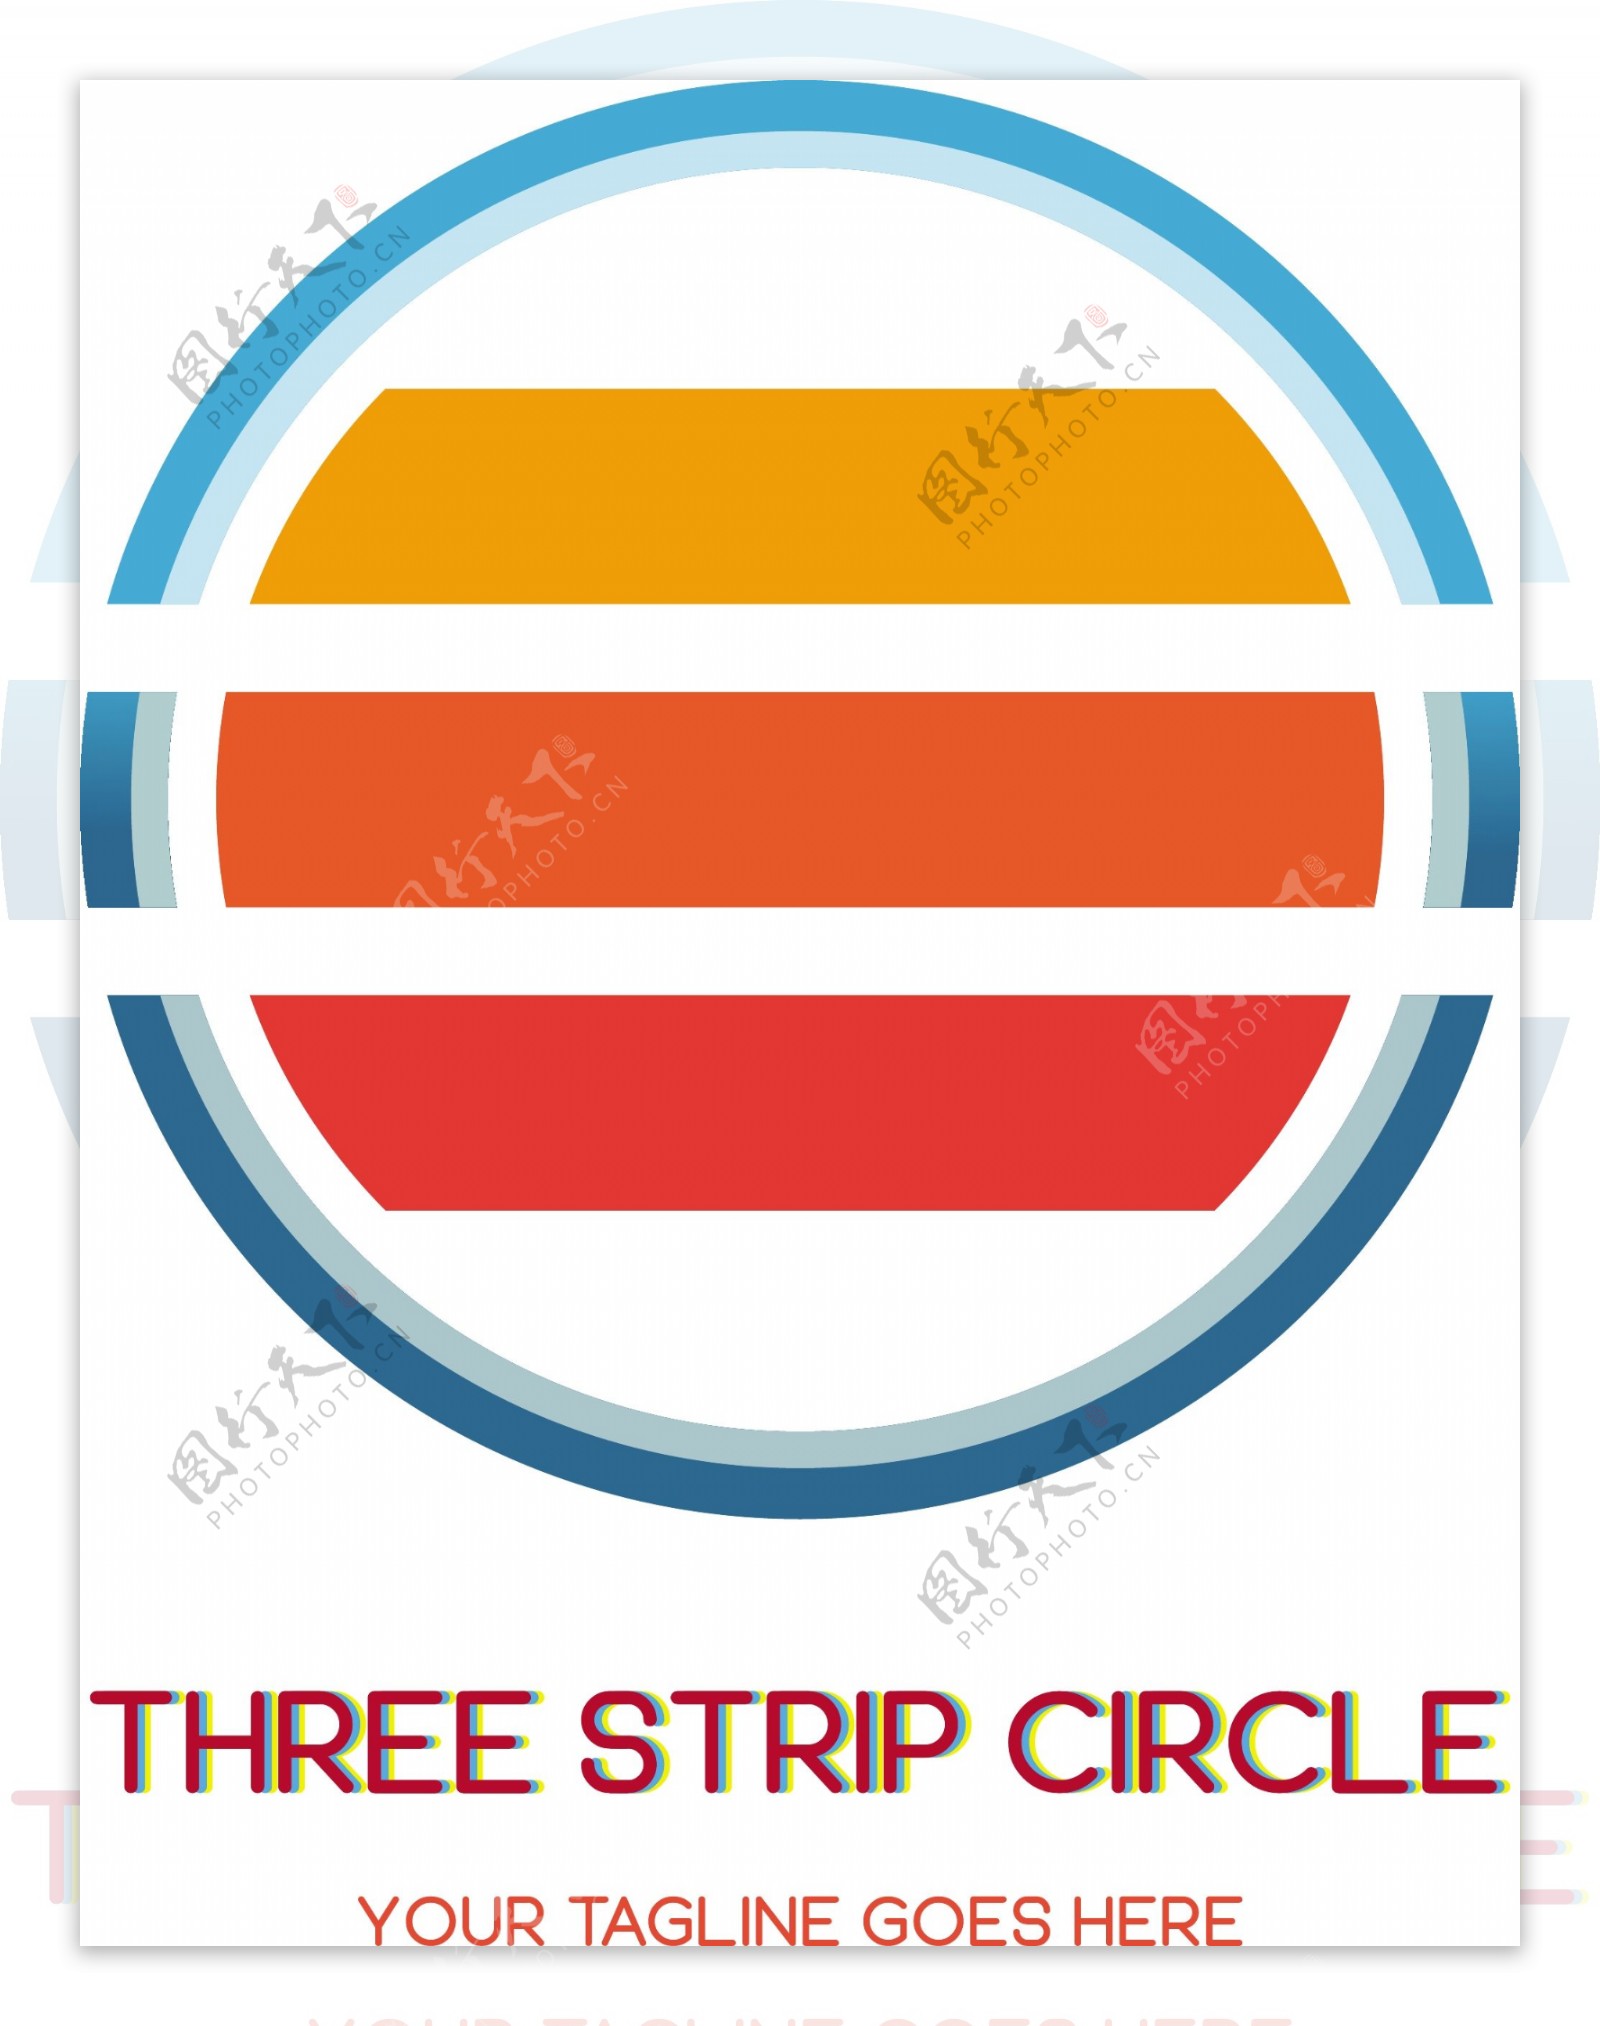 三条圆形标志